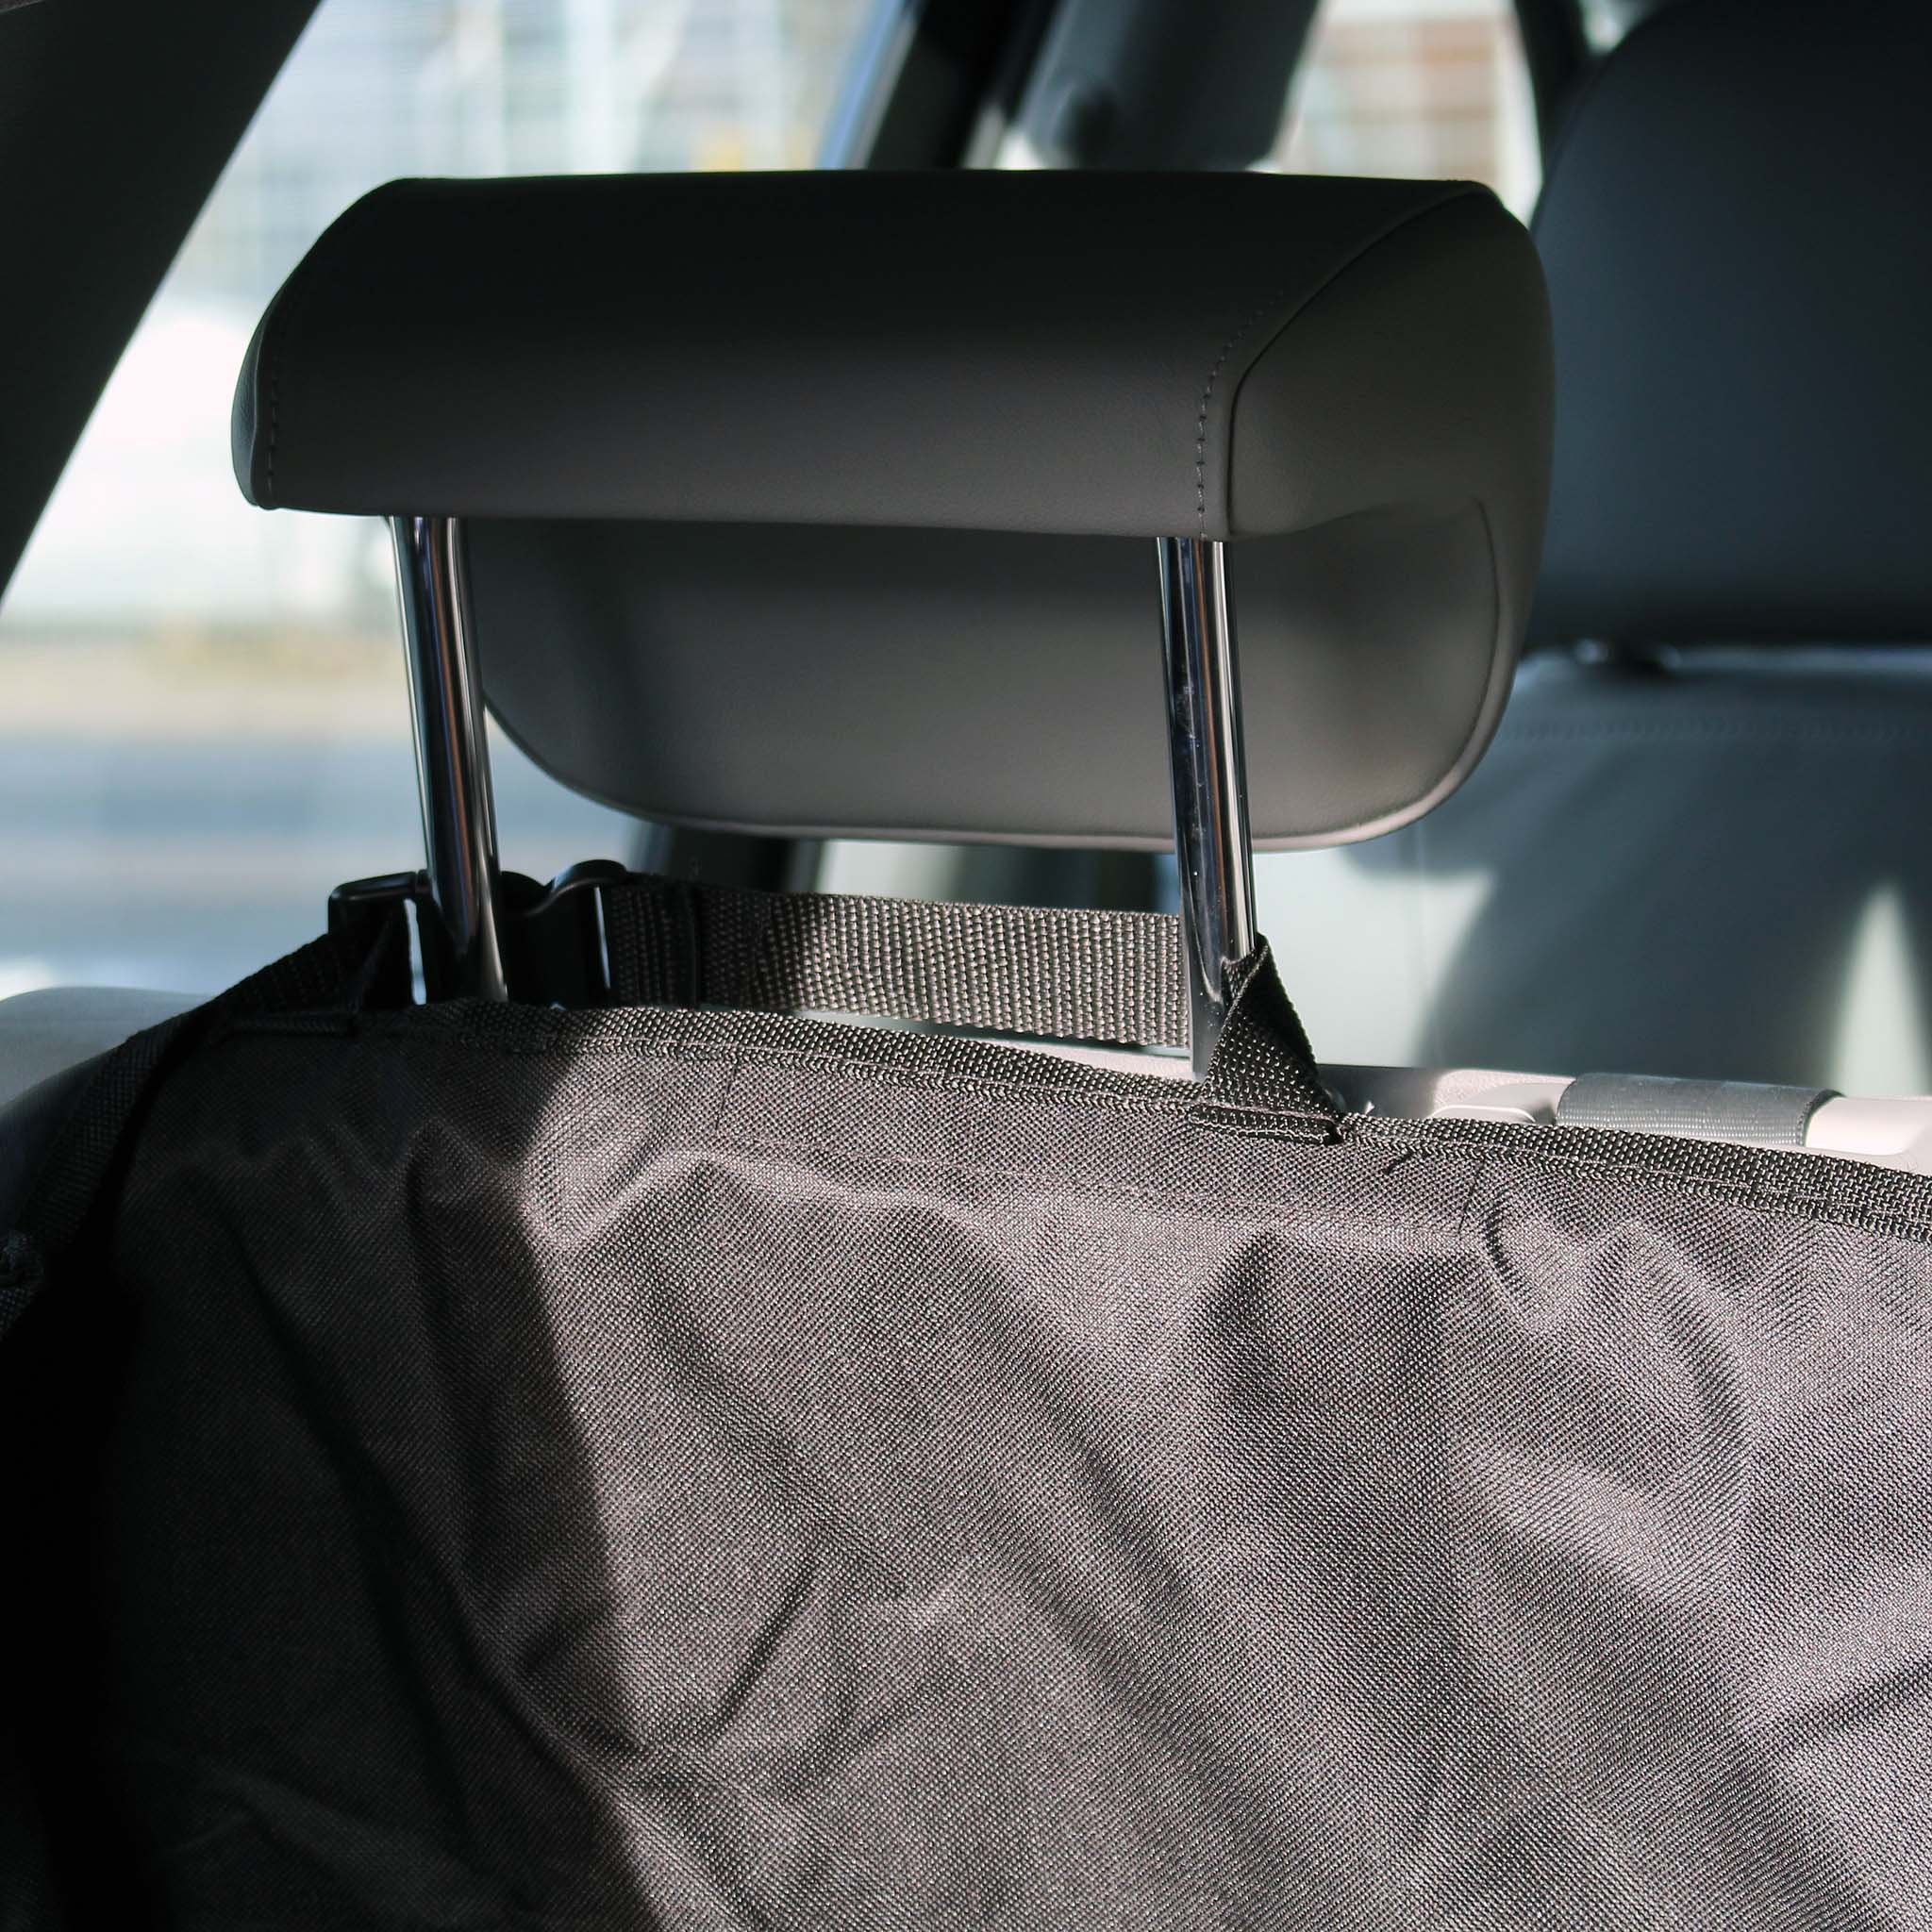  Protection de pare-chocs arrière pour voiture, noir, protection  de coffre en caoutchouc résistant aux rayures pour portes d'entrée pour  SUV, voitures et véhicules (90 cm) (noir)